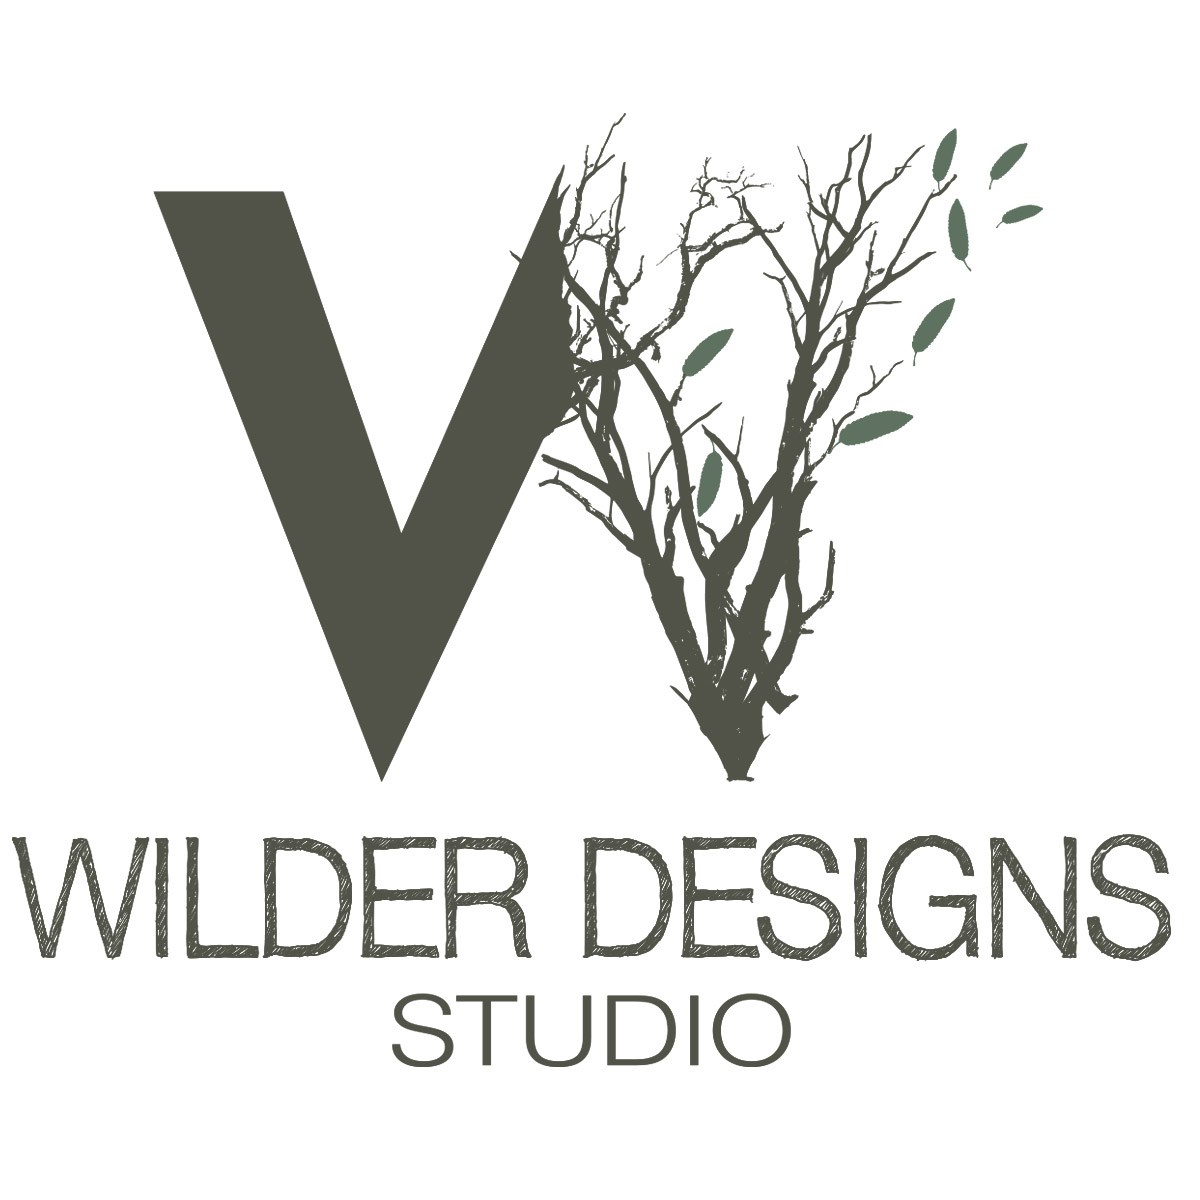 WILDER DESIGNS STUDIO